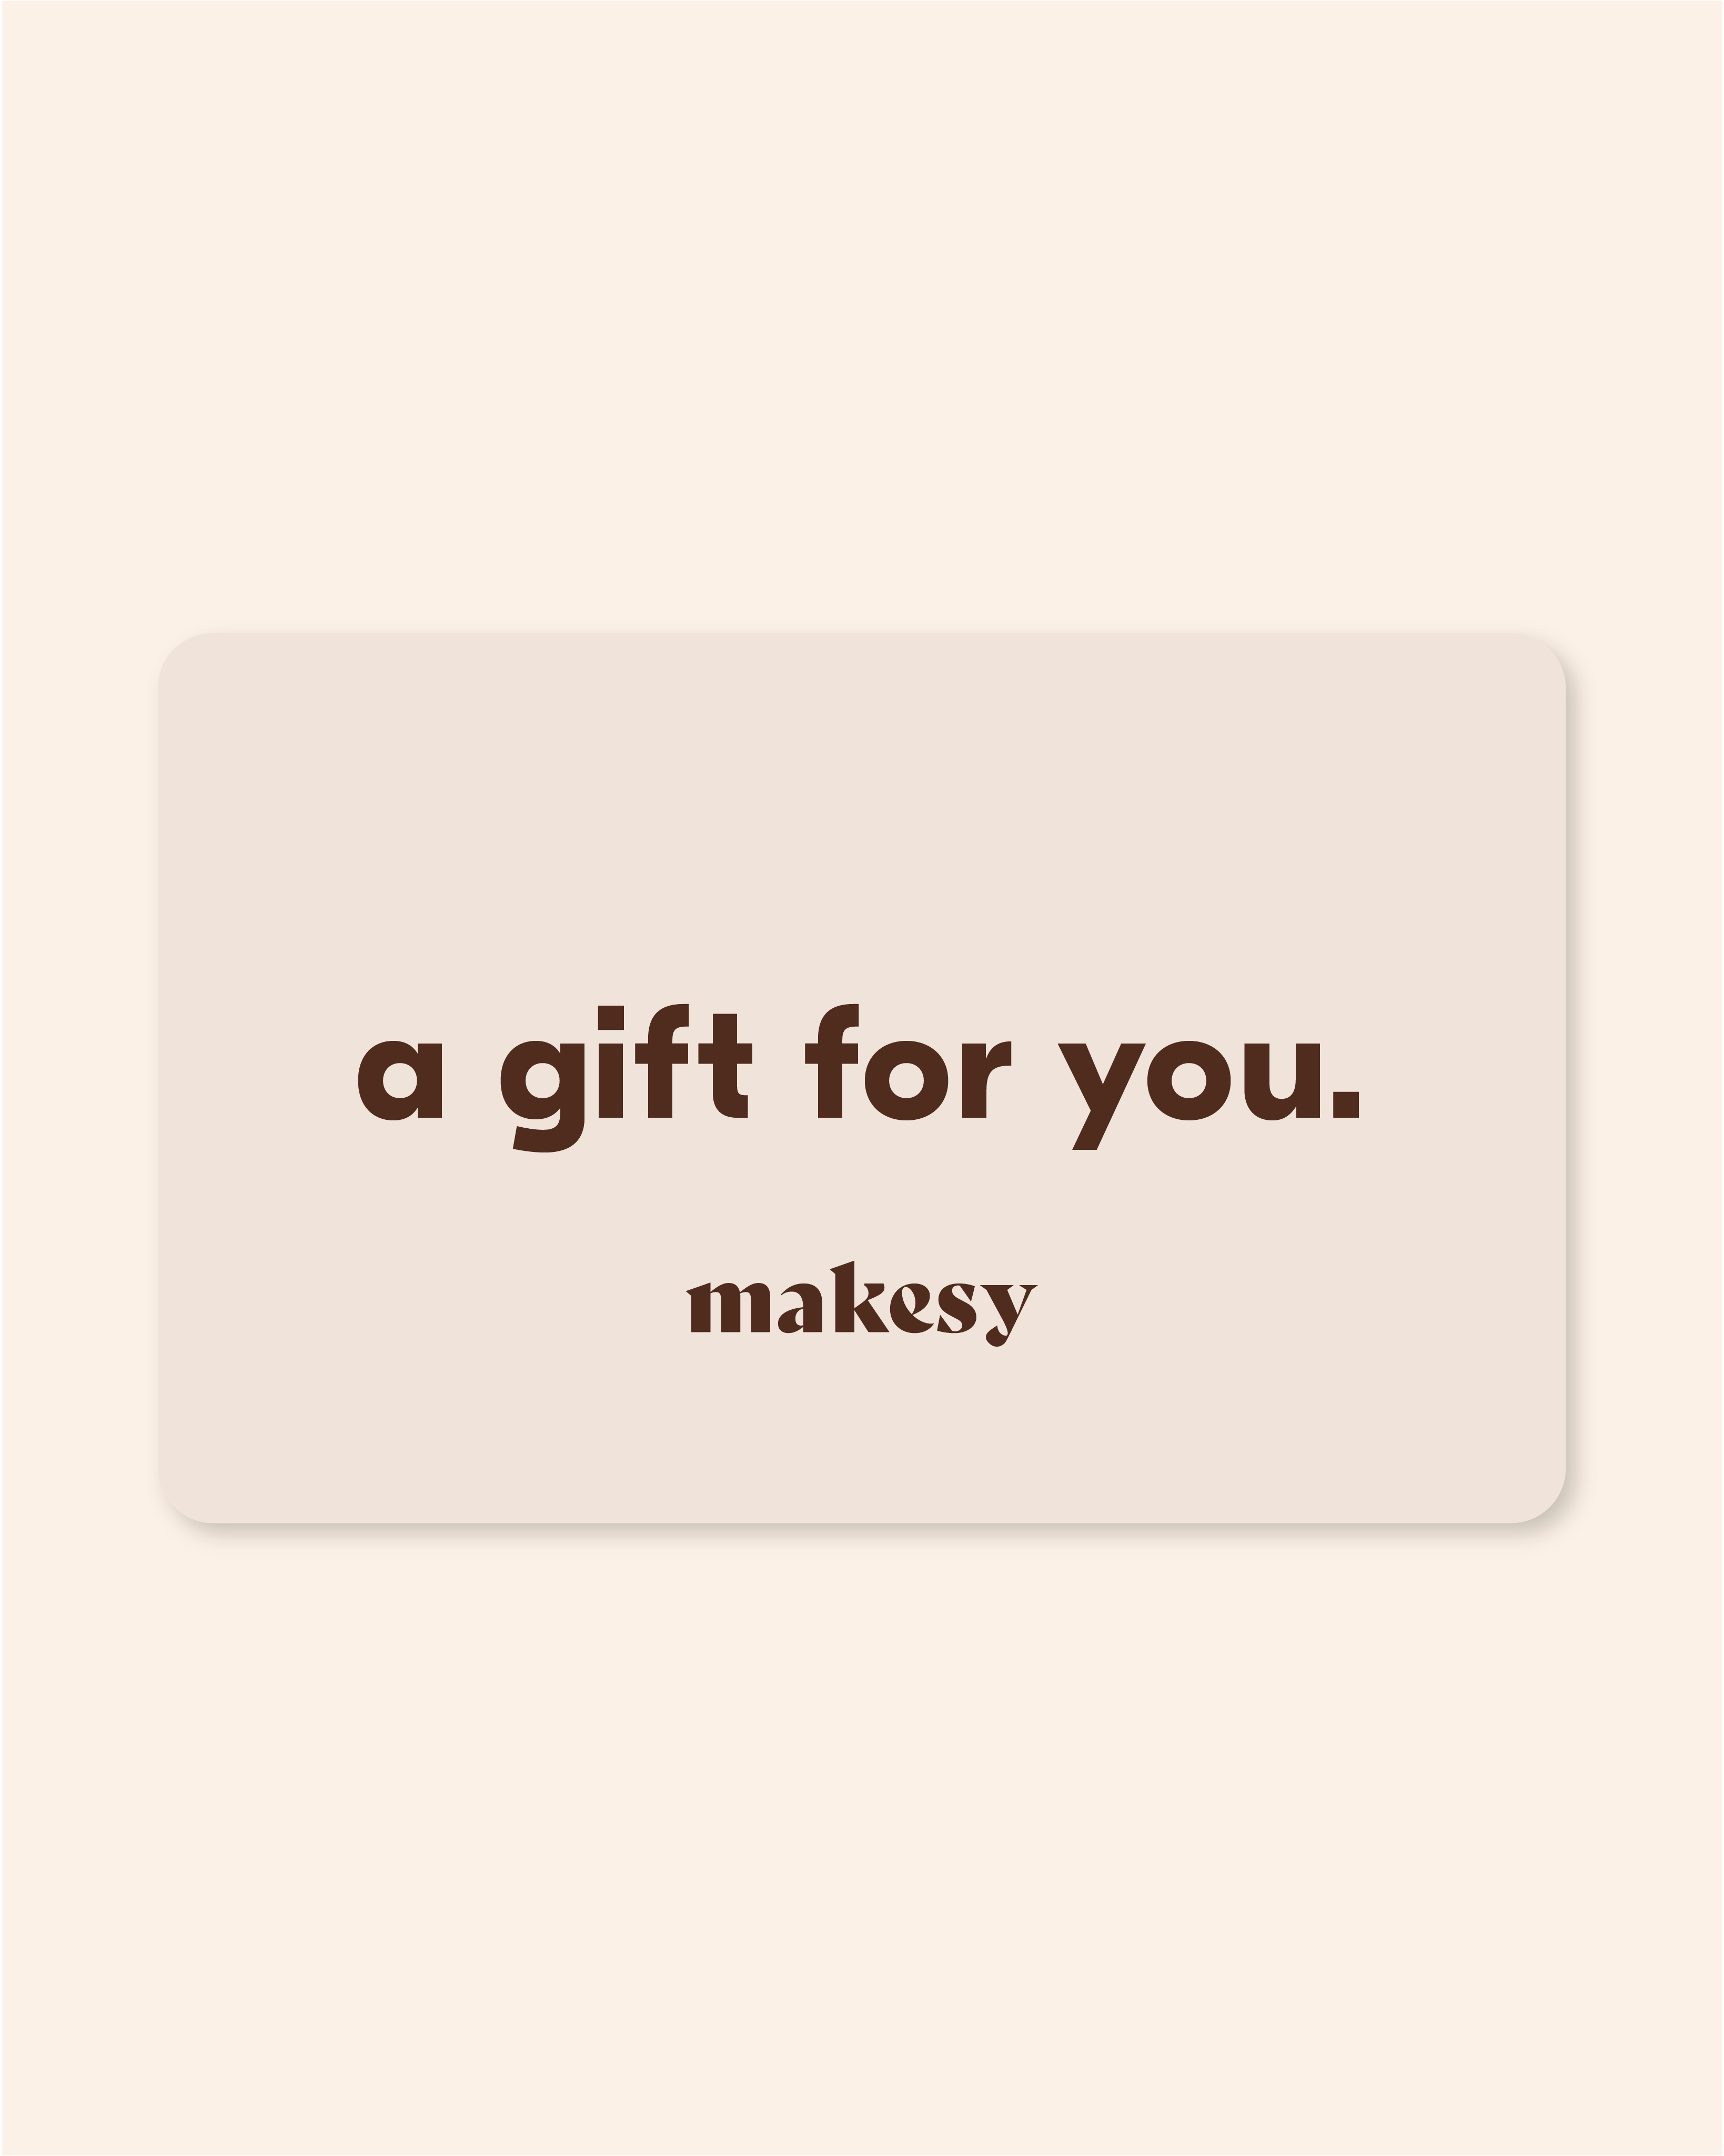 $50 makesy gift card - Makesy